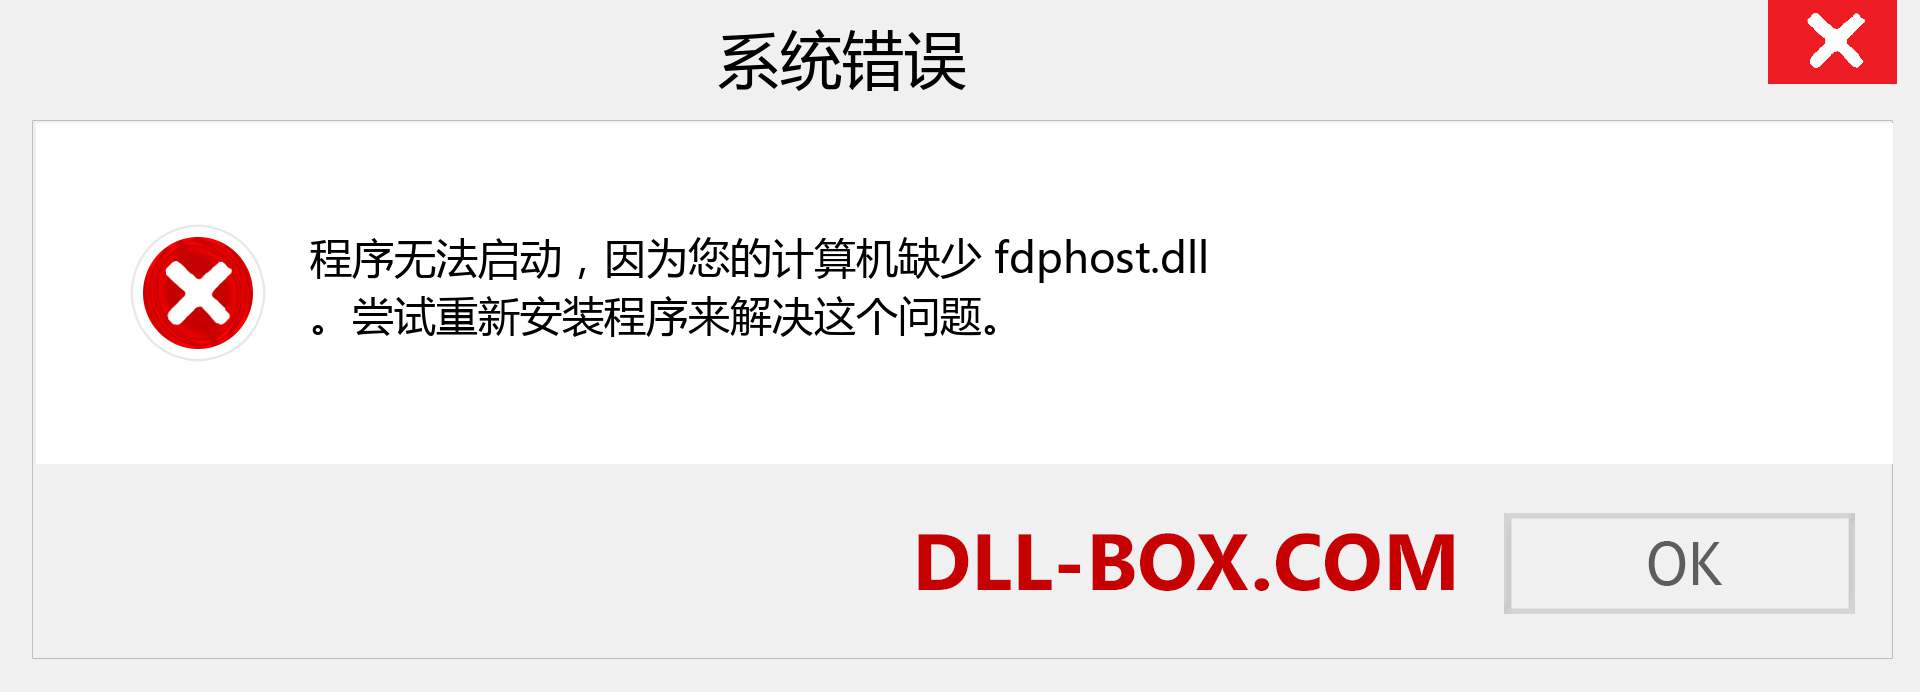 fdphost.dll 文件丢失？。 适用于 Windows 7、8、10 的下载 - 修复 Windows、照片、图像上的 fdphost dll 丢失错误